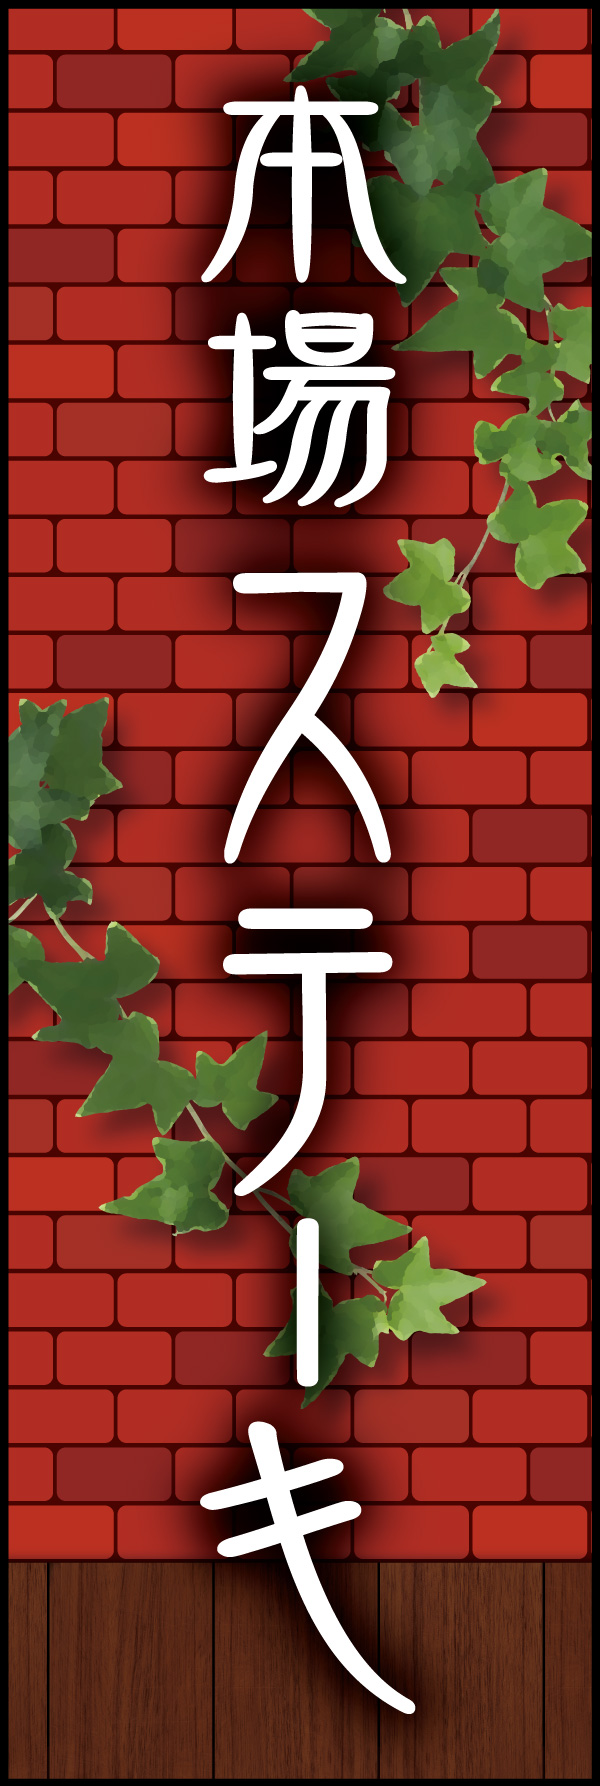 本場ステーキ 04 「本場ステーキ」ののぼりです。赤煉瓦をバックに、懐かしい洋食屋さんをイメージしてデザインしました。(Y.M)